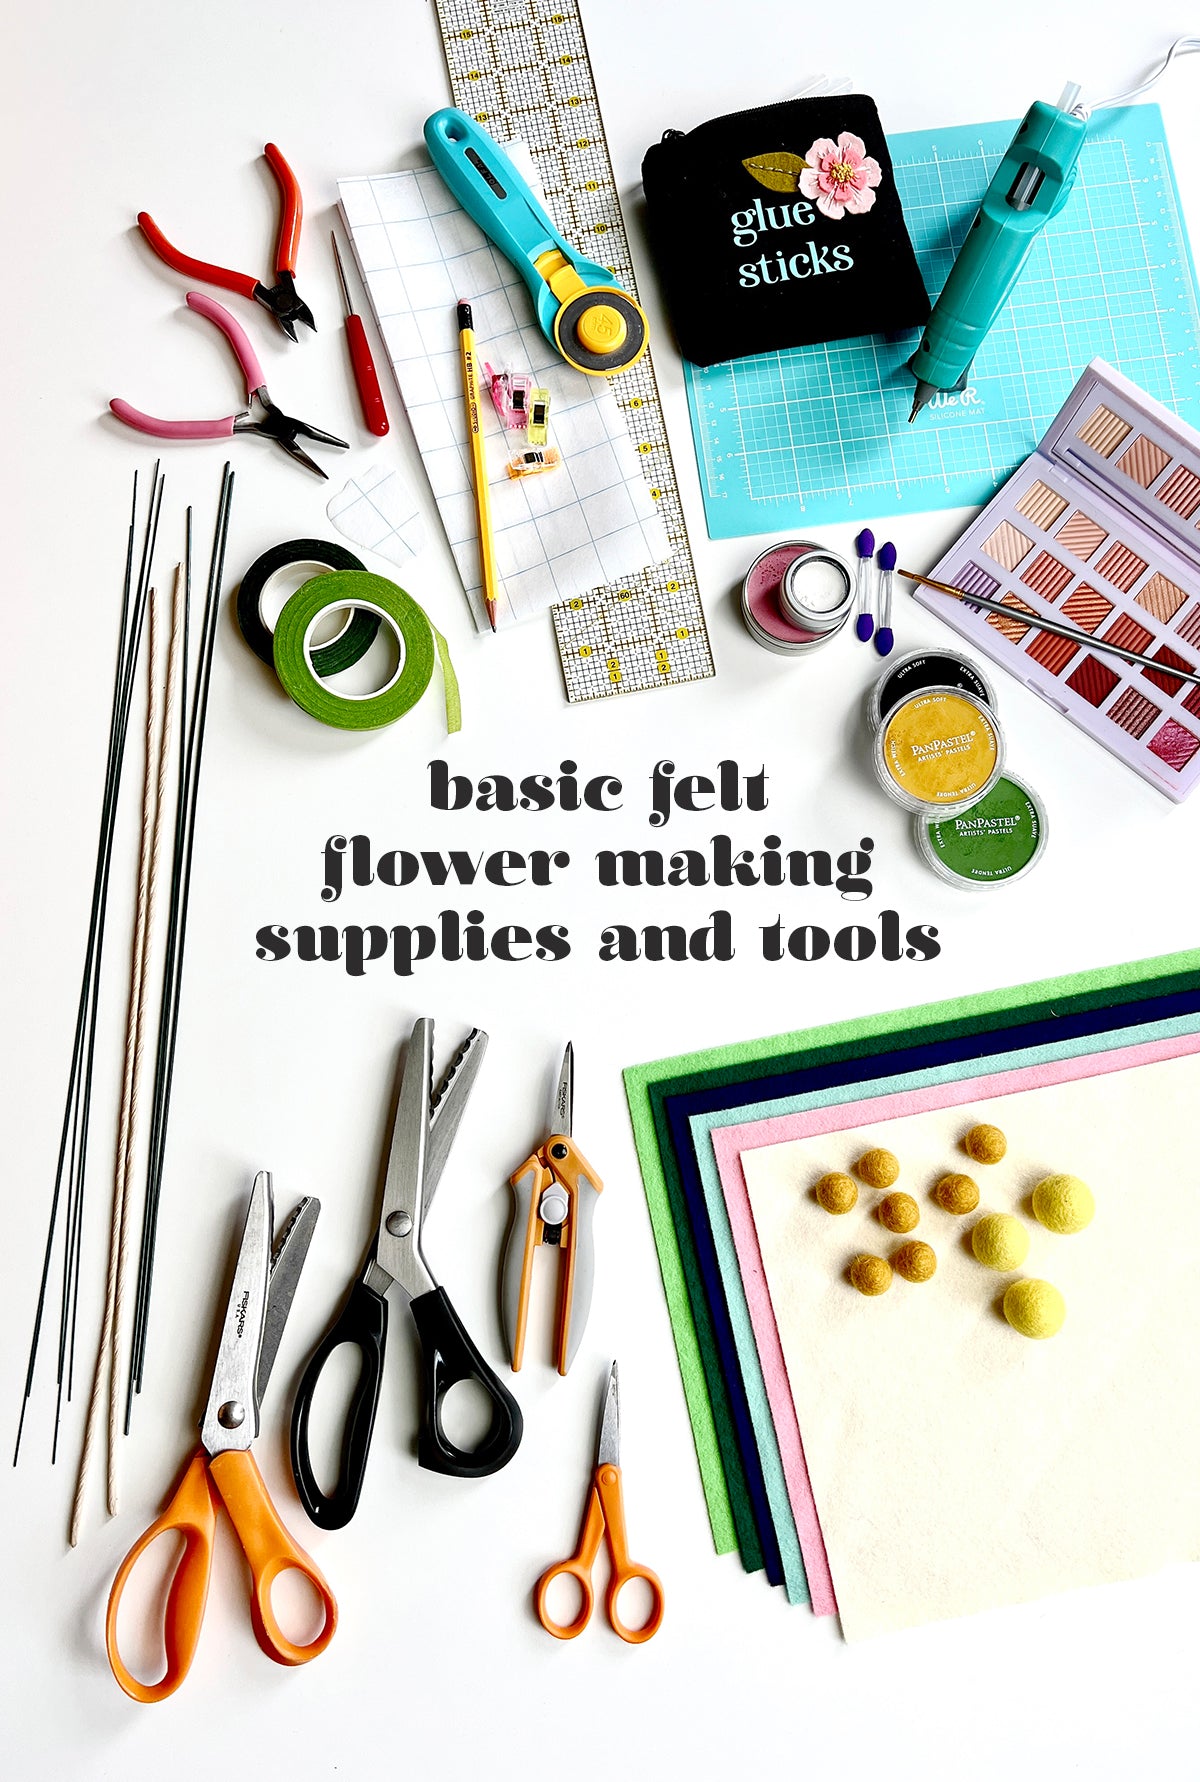 Supplies needed for basic felt flower making